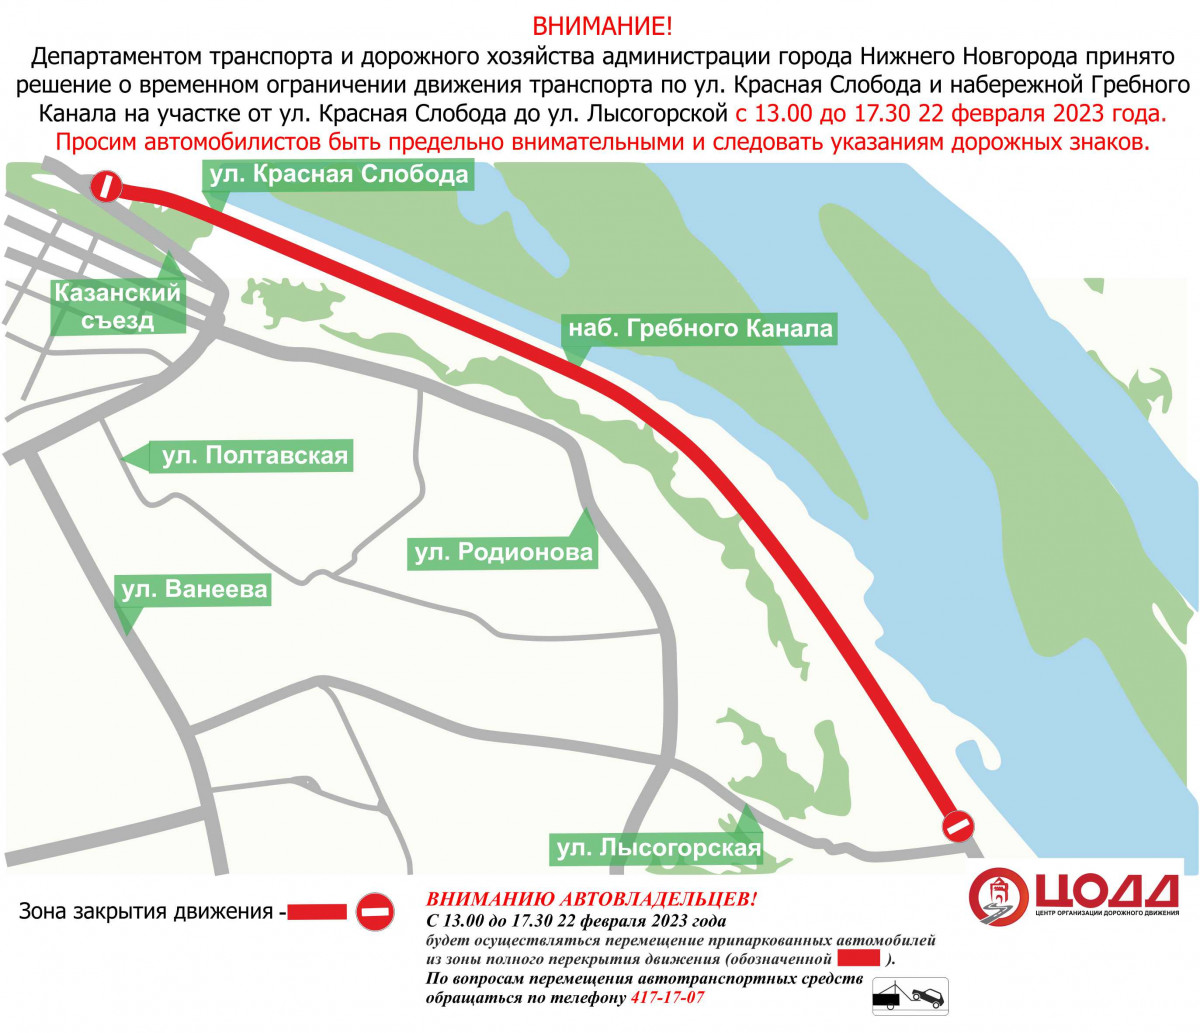 Движение приостановят на участке набережной Гребного канала и площади Минина и Пожарского